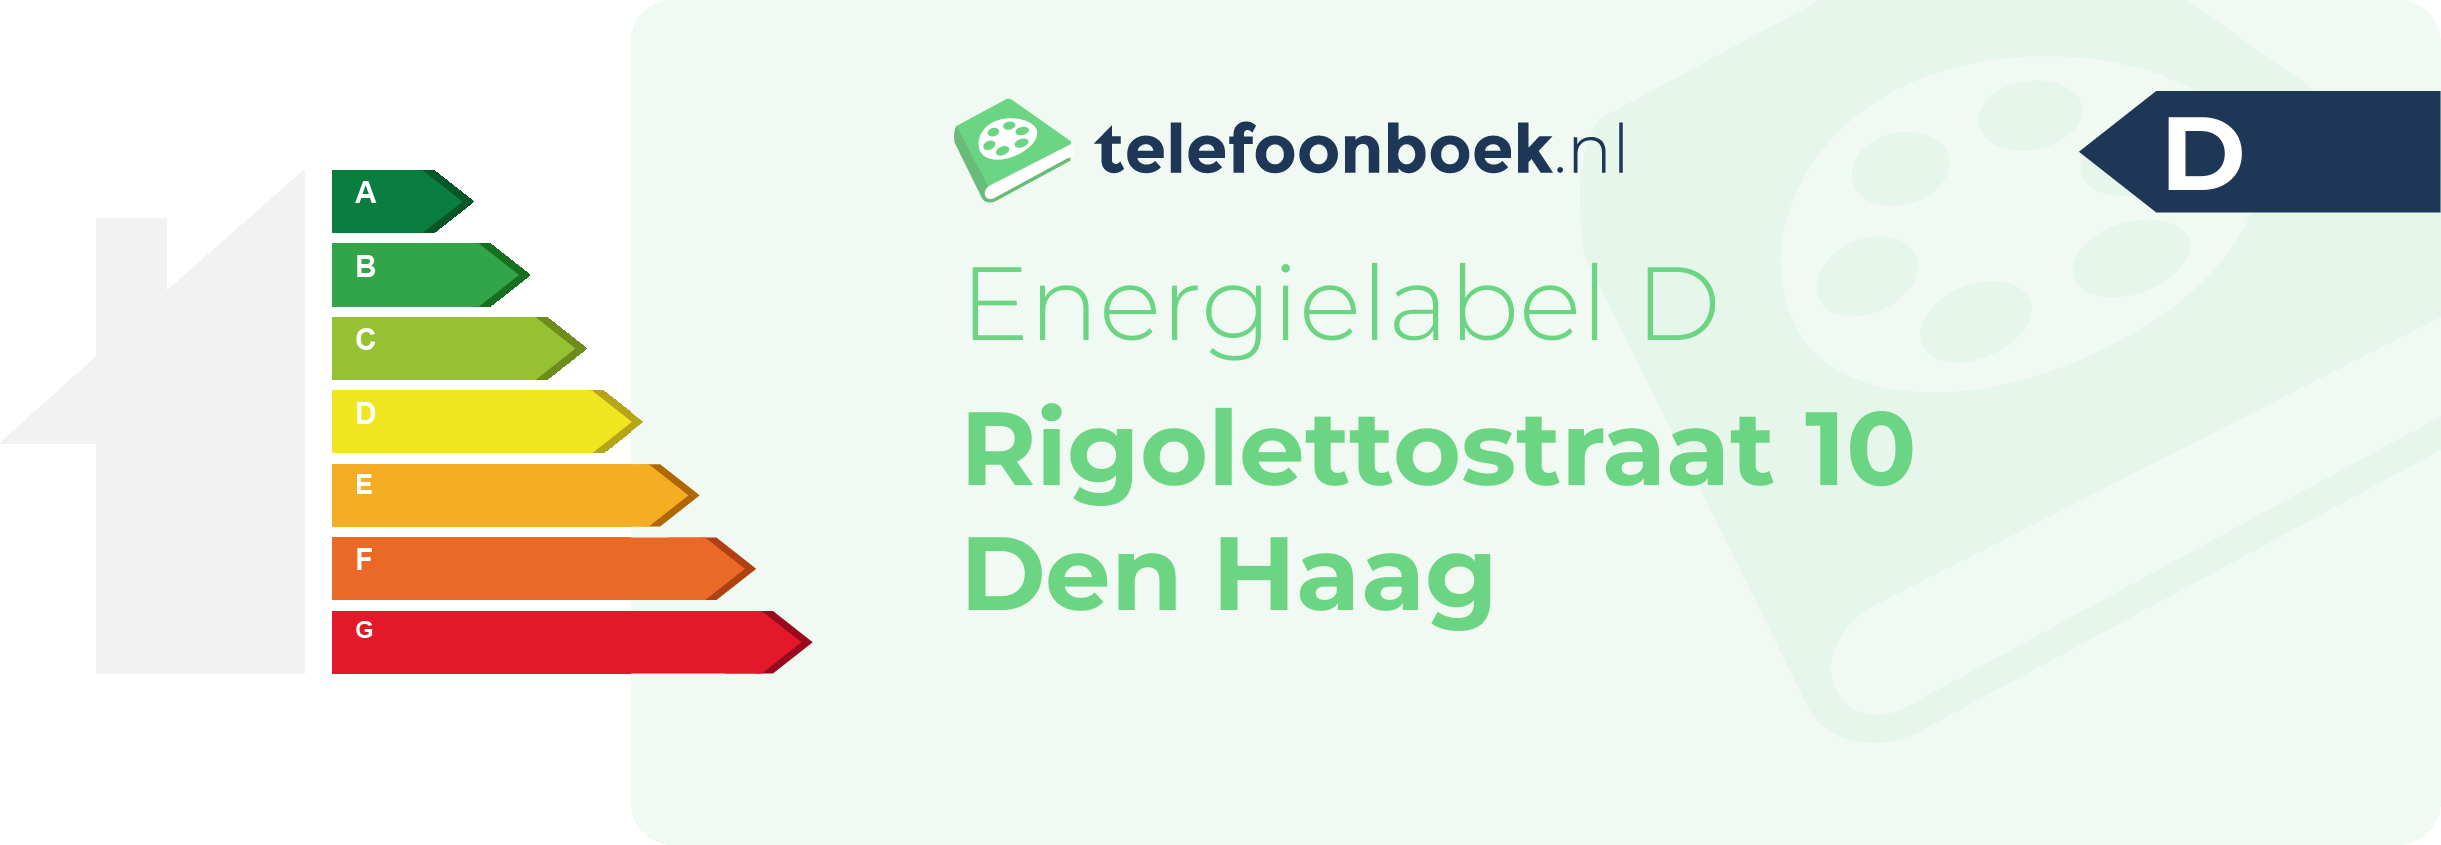 Energielabel Rigolettostraat 10 Den Haag